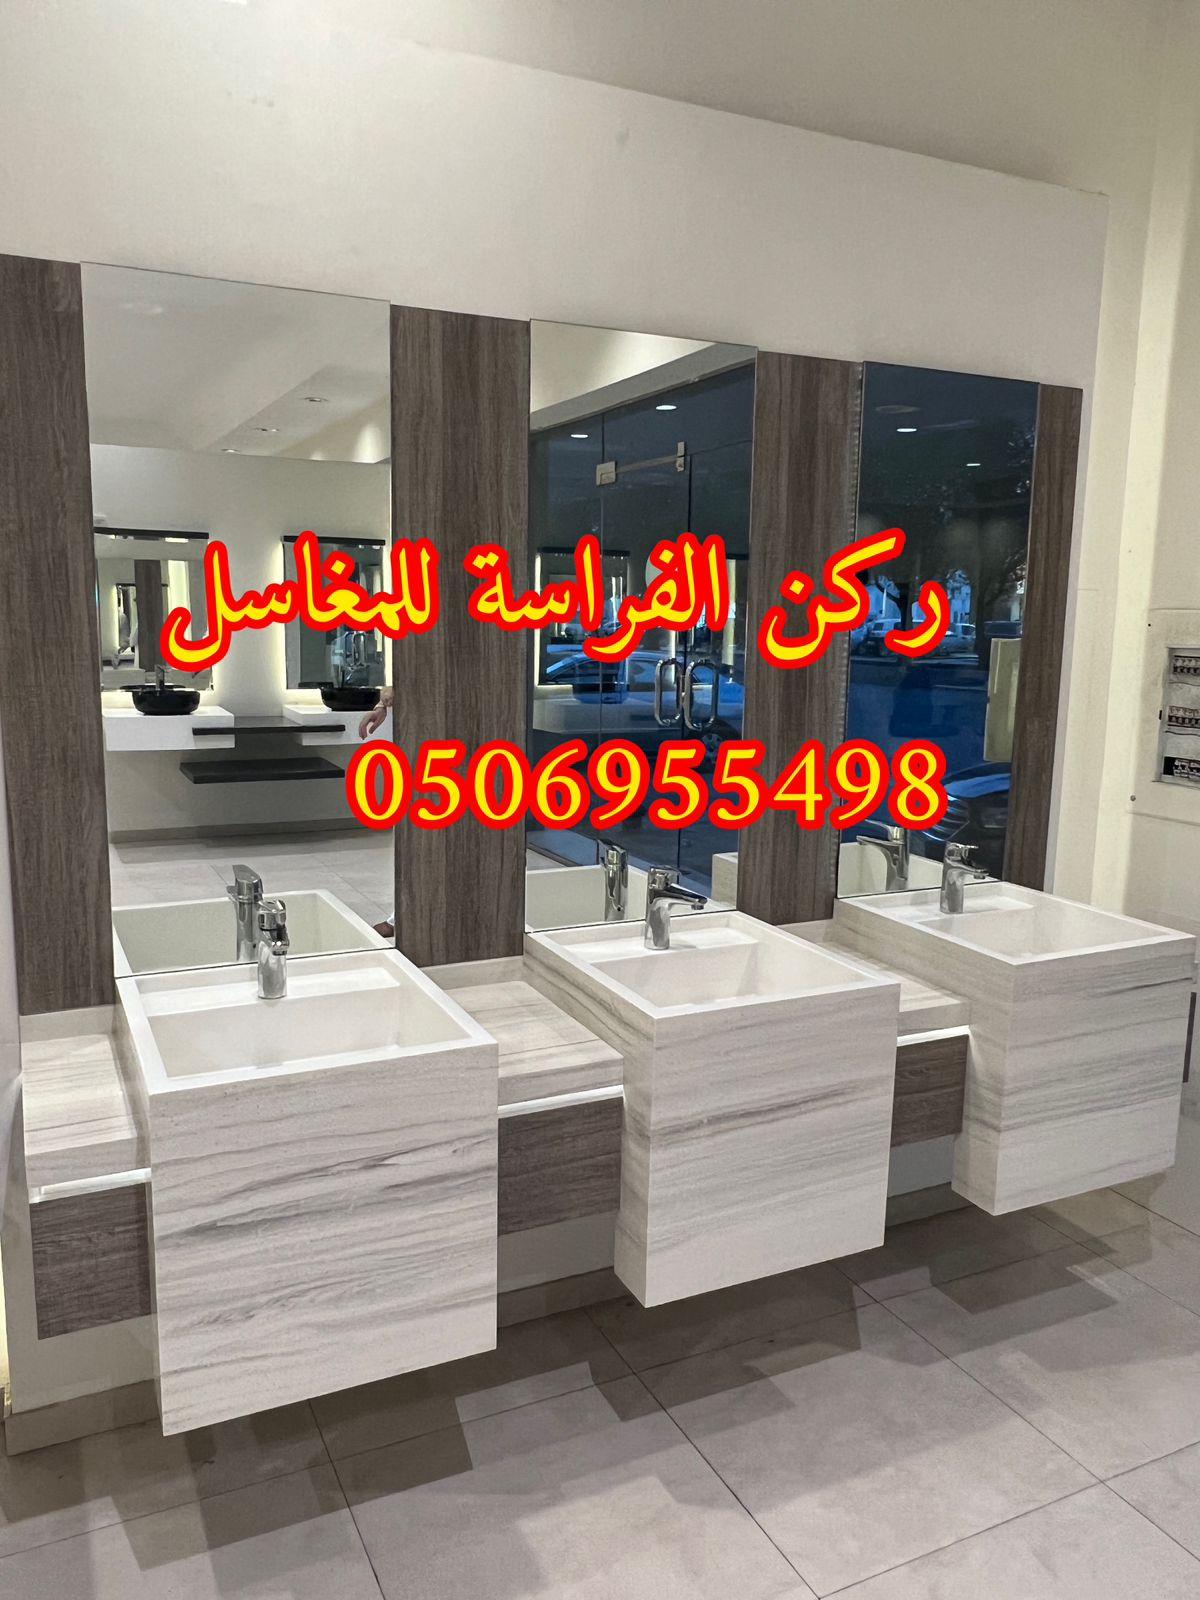 احواض مغاسل رخام في الرياض,0506955498 718913159